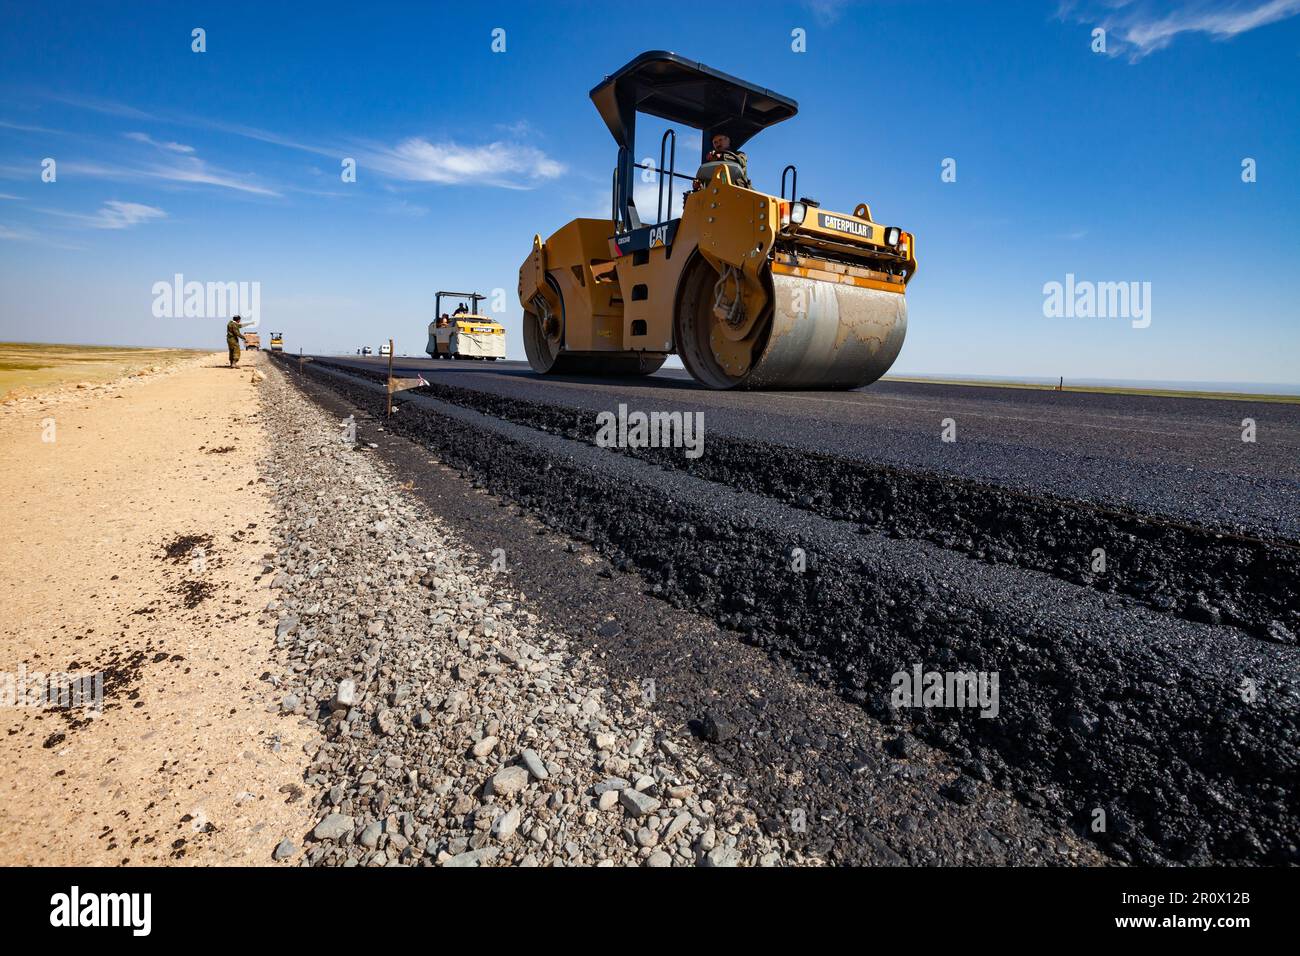 Province de Kyzylorda, Kazakhstan, 29 avril 2012 : construction de l'autoroute Europe occidentale-Chine occidentale. Couches de route. Attache aplatie du compacteur tandem vibrant Caterpillar Banque D'Images